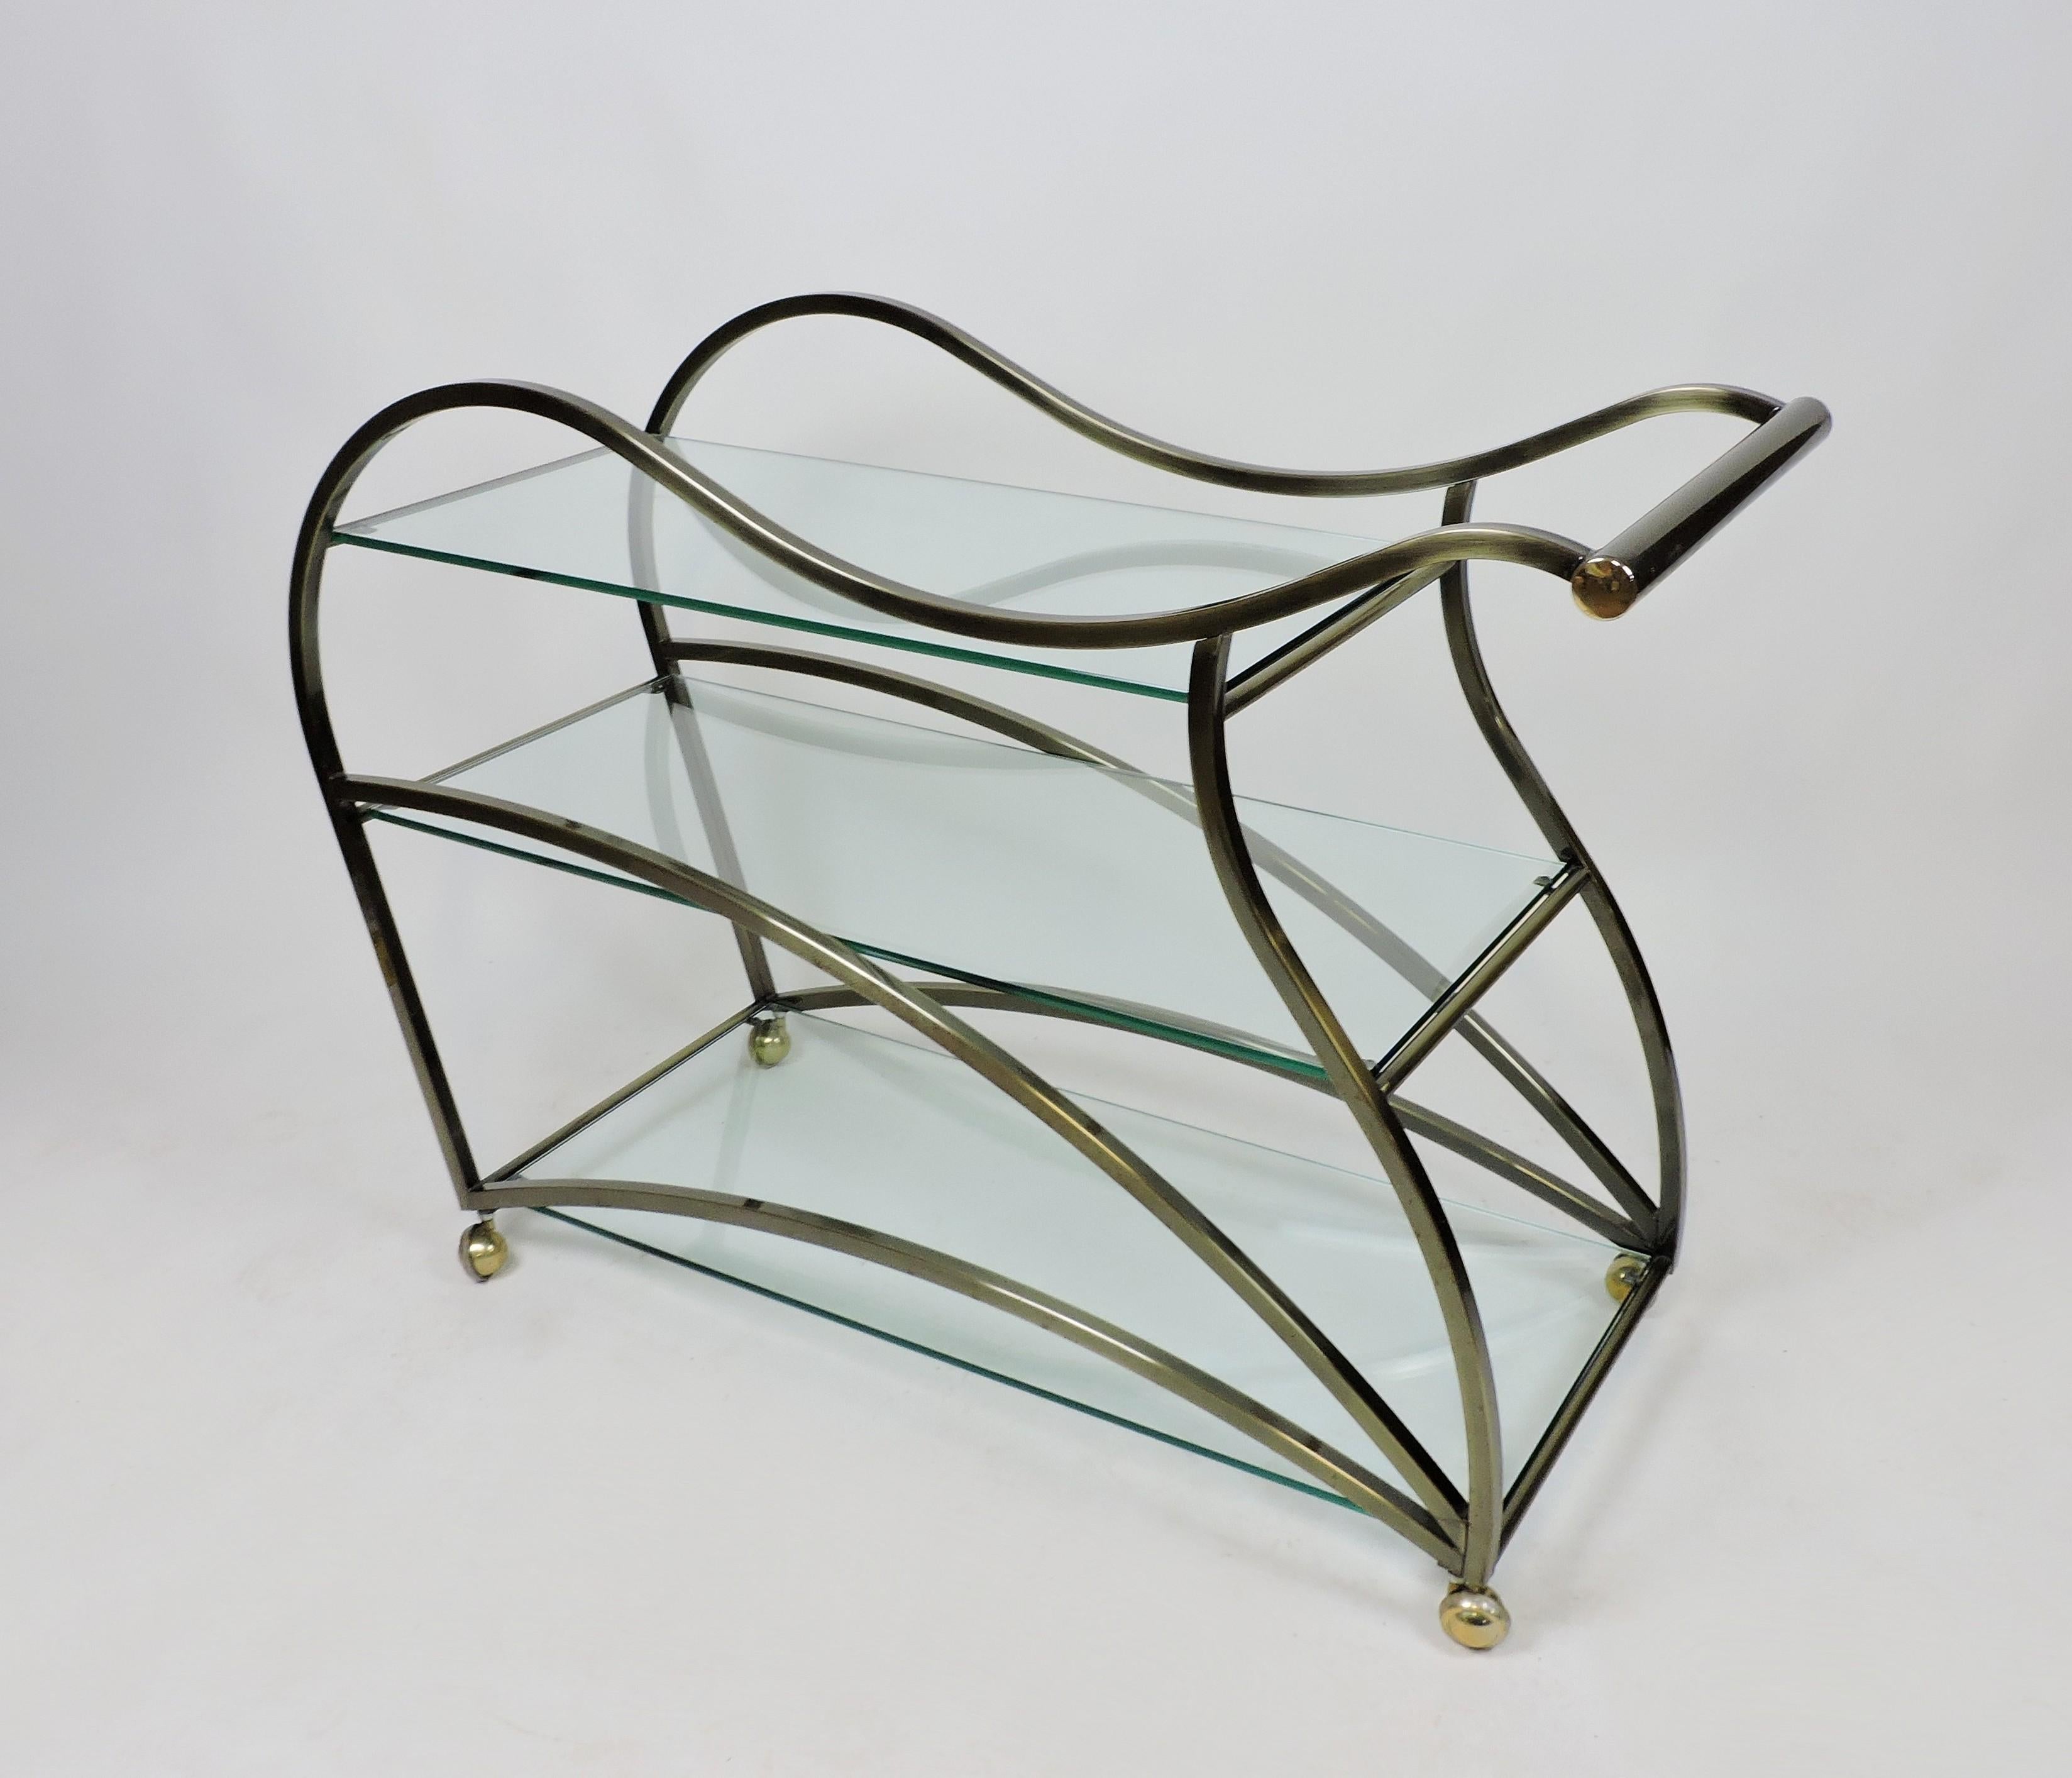 20th Century DIA Design Institute of America Modern Curvaceous Sculptural Bar or Tea Cart